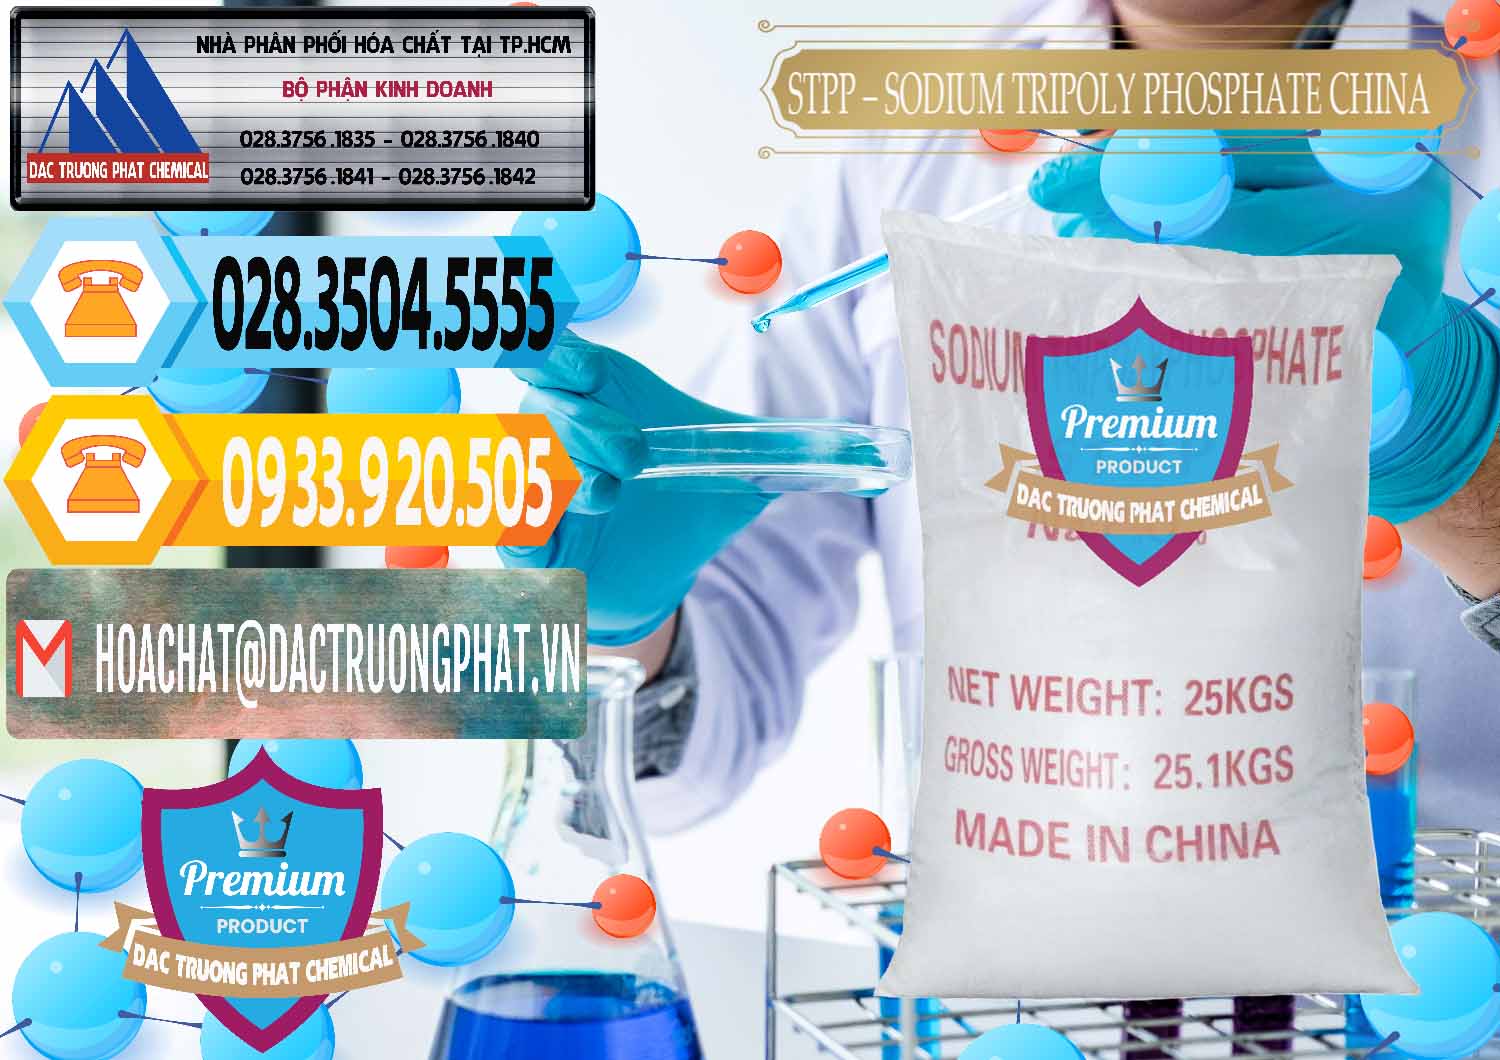 Chuyên bán ( cung cấp ) Sodium Tripoly Phosphate - STPP 96% Chữ Đỏ Trung Quốc China - 0155 - Công ty phân phối - cung cấp hóa chất tại TP.HCM - hoachattayrua.net